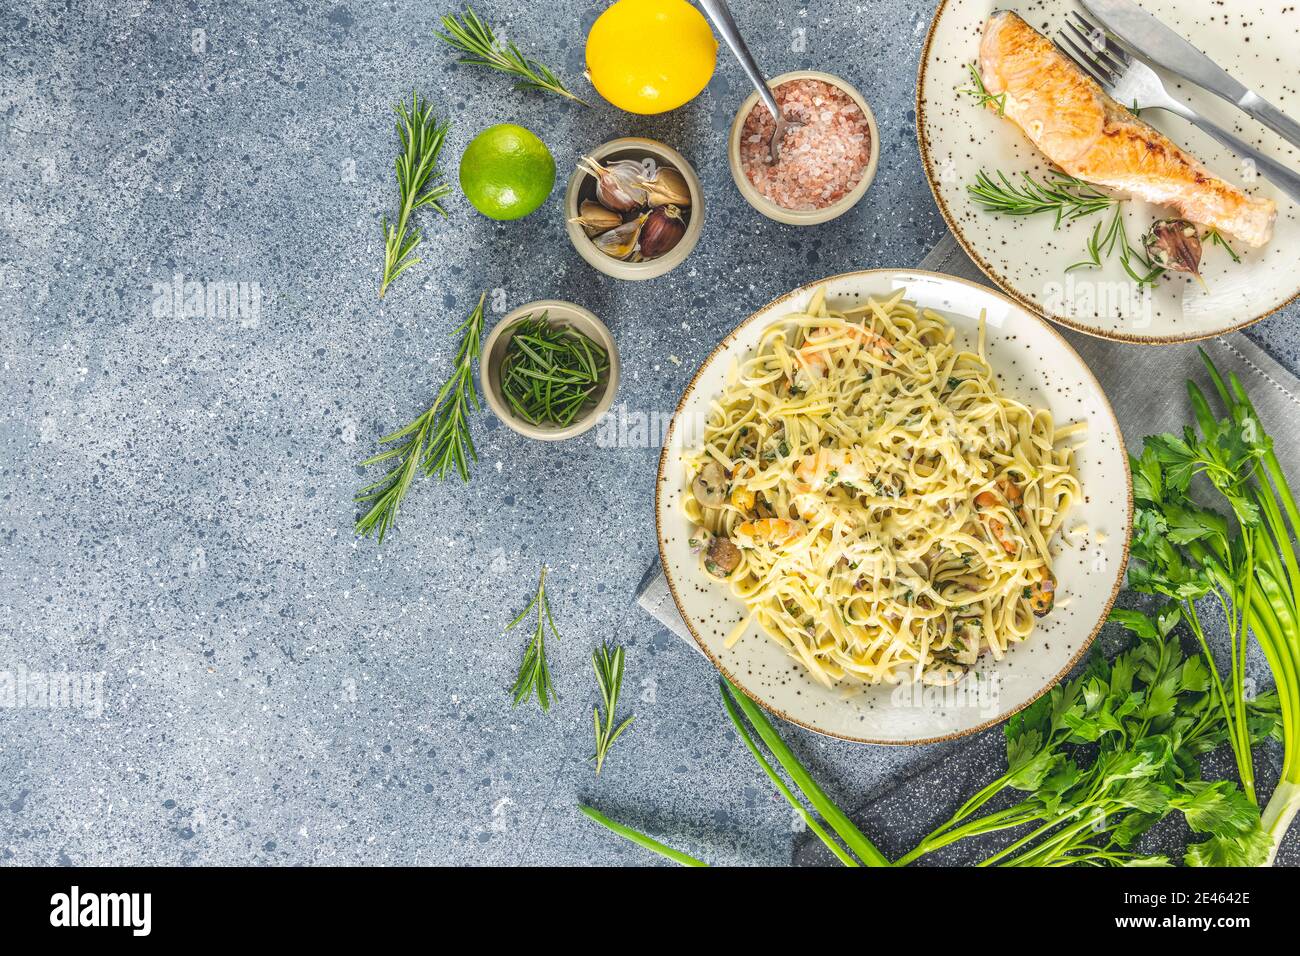 Pasta Linguine mit Pilzen, Garnelen und Meeresfrüchten Muscheln, Käse und Kräutern, in Keramikplatte auf einer hellgrauen Oberfläche. Stockfoto